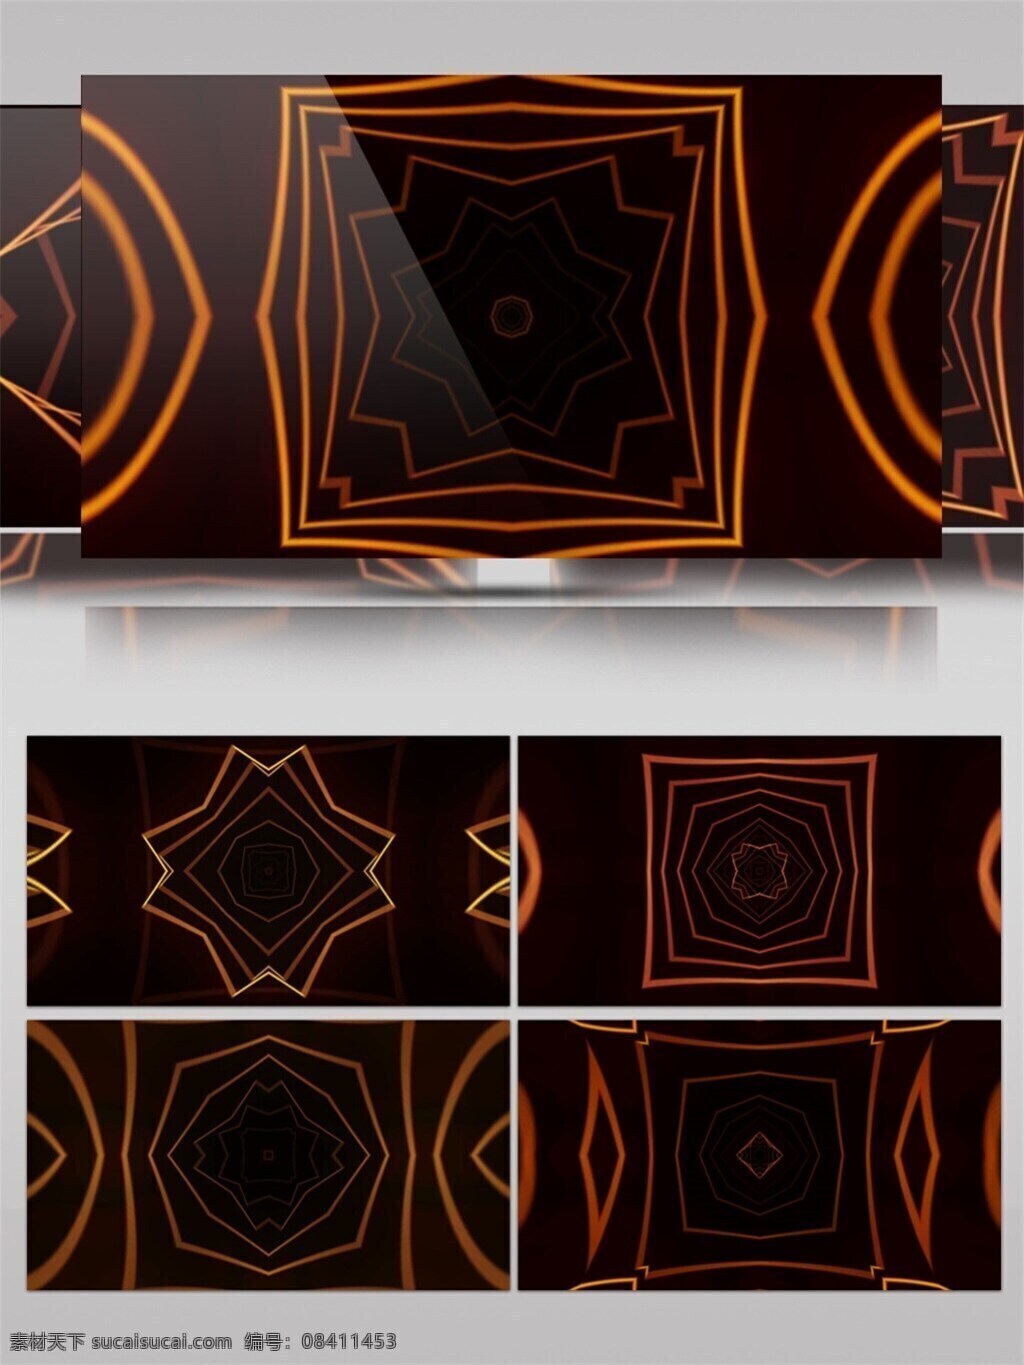 黄光 几何 投影 高清 视频 vj灯光 壁纸图案 背景 立体几何 特效 装饰风格